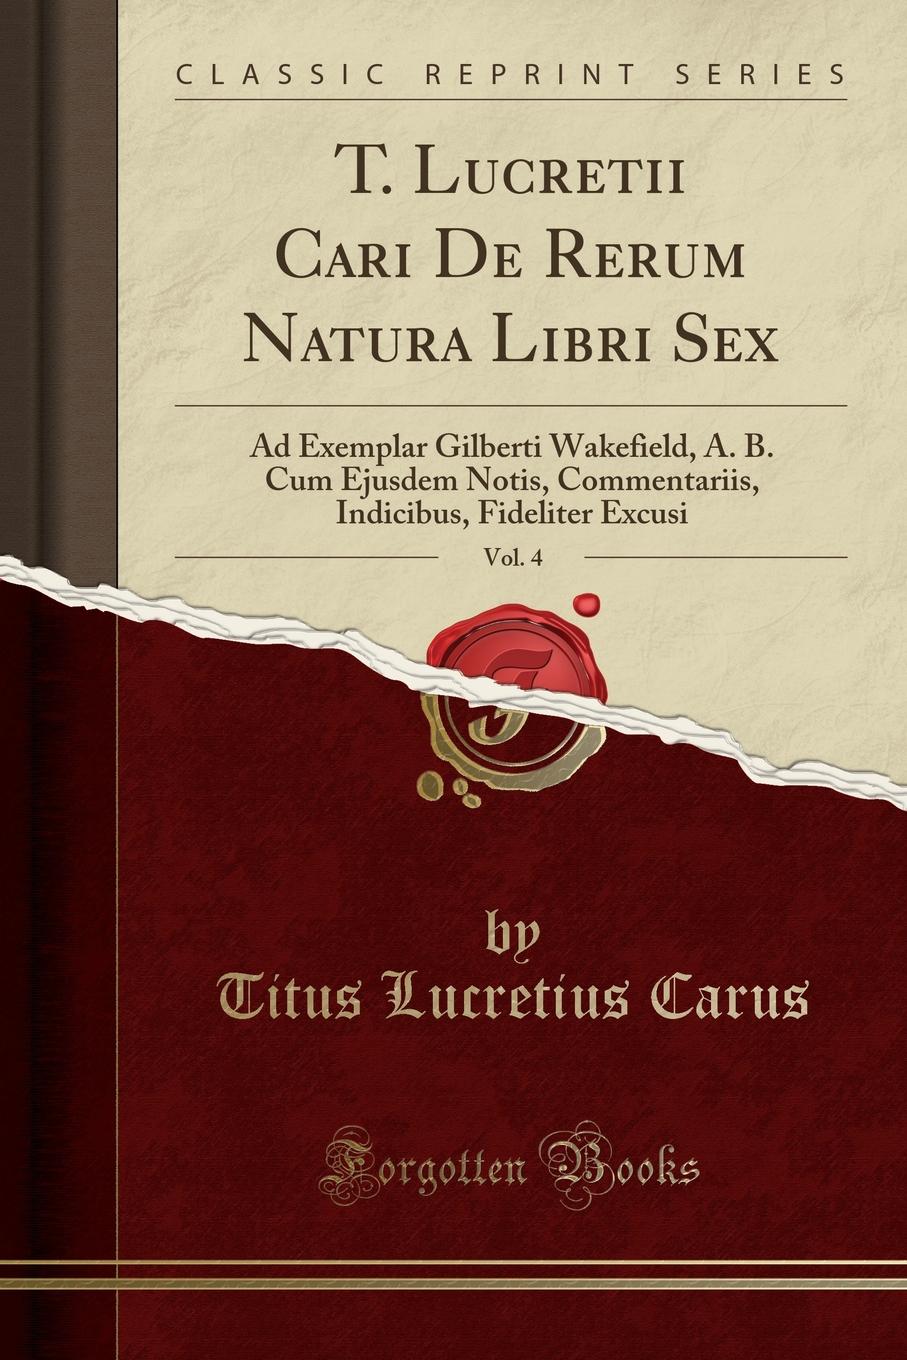 T. Lucretii Cari De Rerum Natura Libri Sex, Vol. 4. Ad Exemplar Gilberti Wakefield, A. B. Cum Ejusdem Notis, Commentariis, Indicibus, Fideliter Excusi (Classic Reprint)